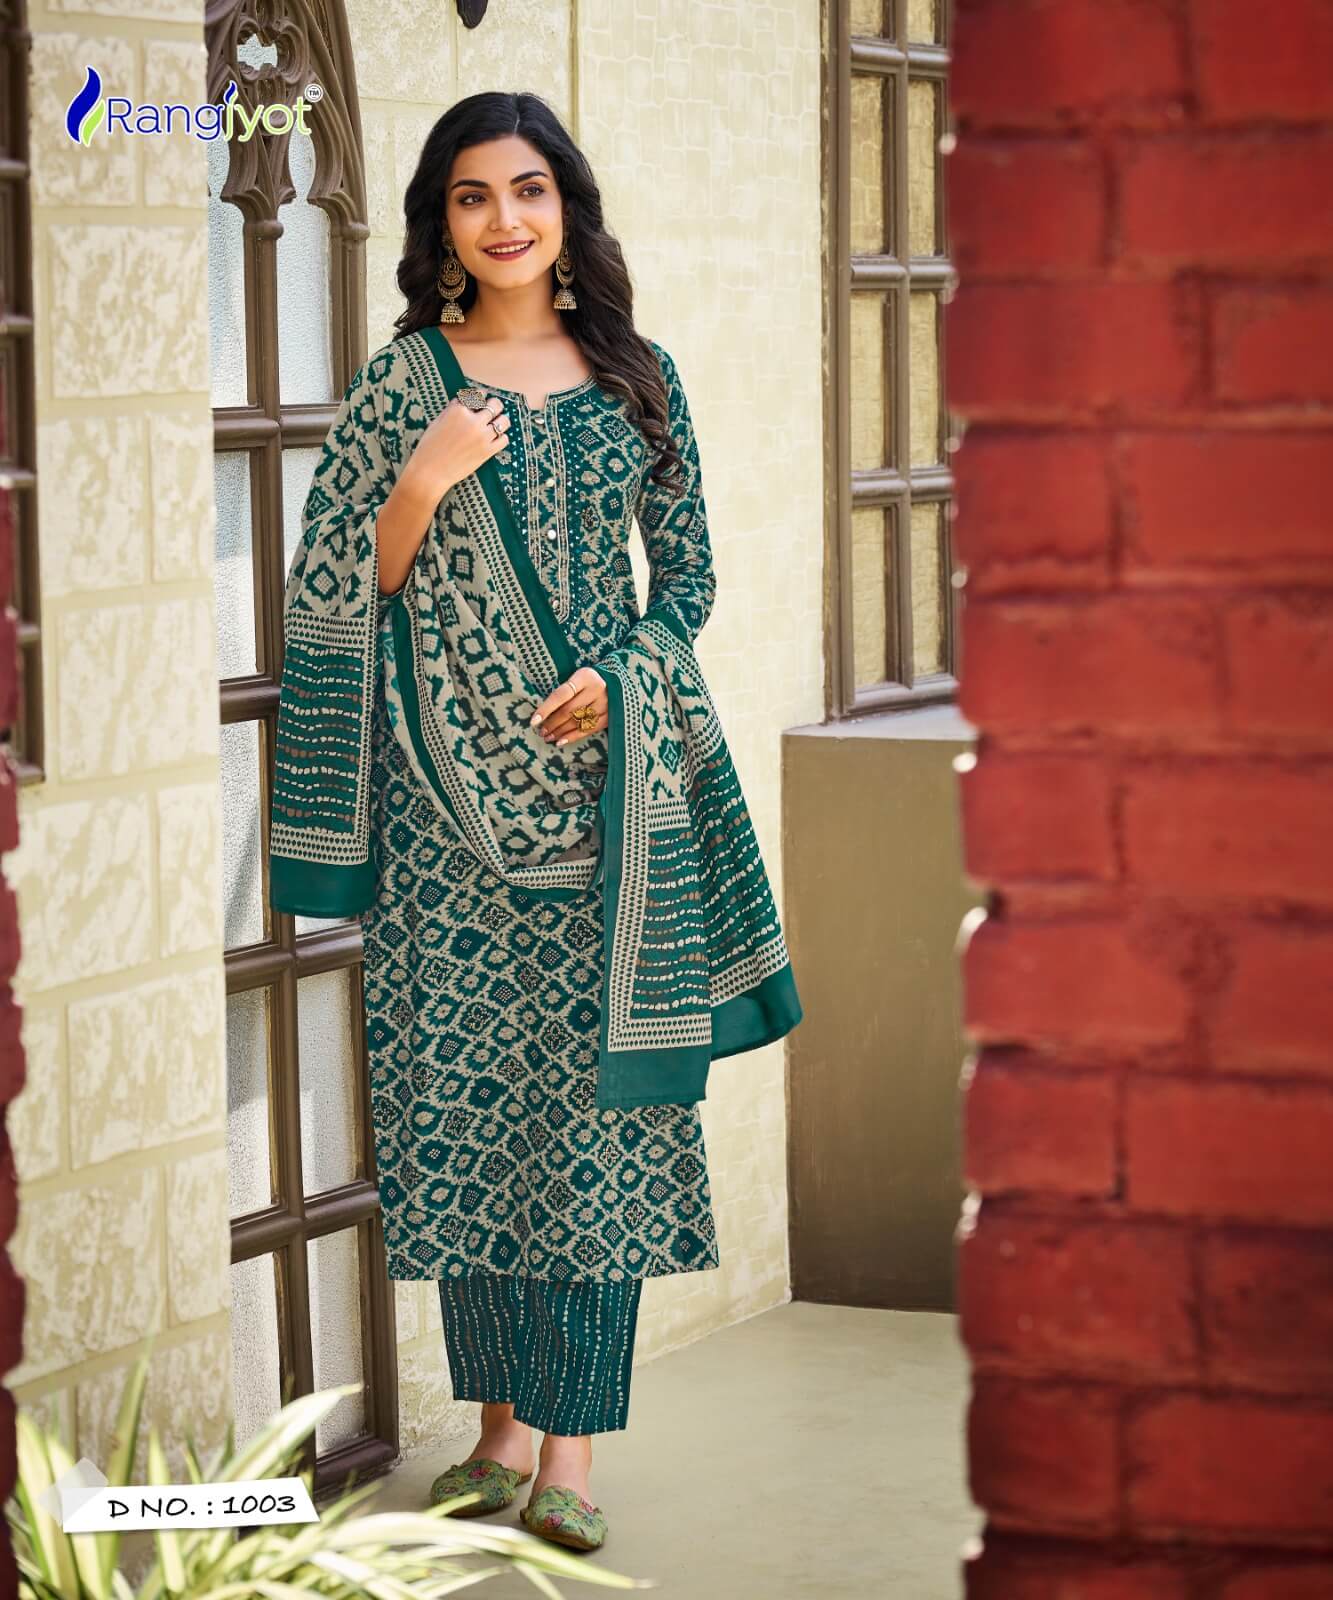 Rangjyot Anamika Readymade Dress Catalog collection 2